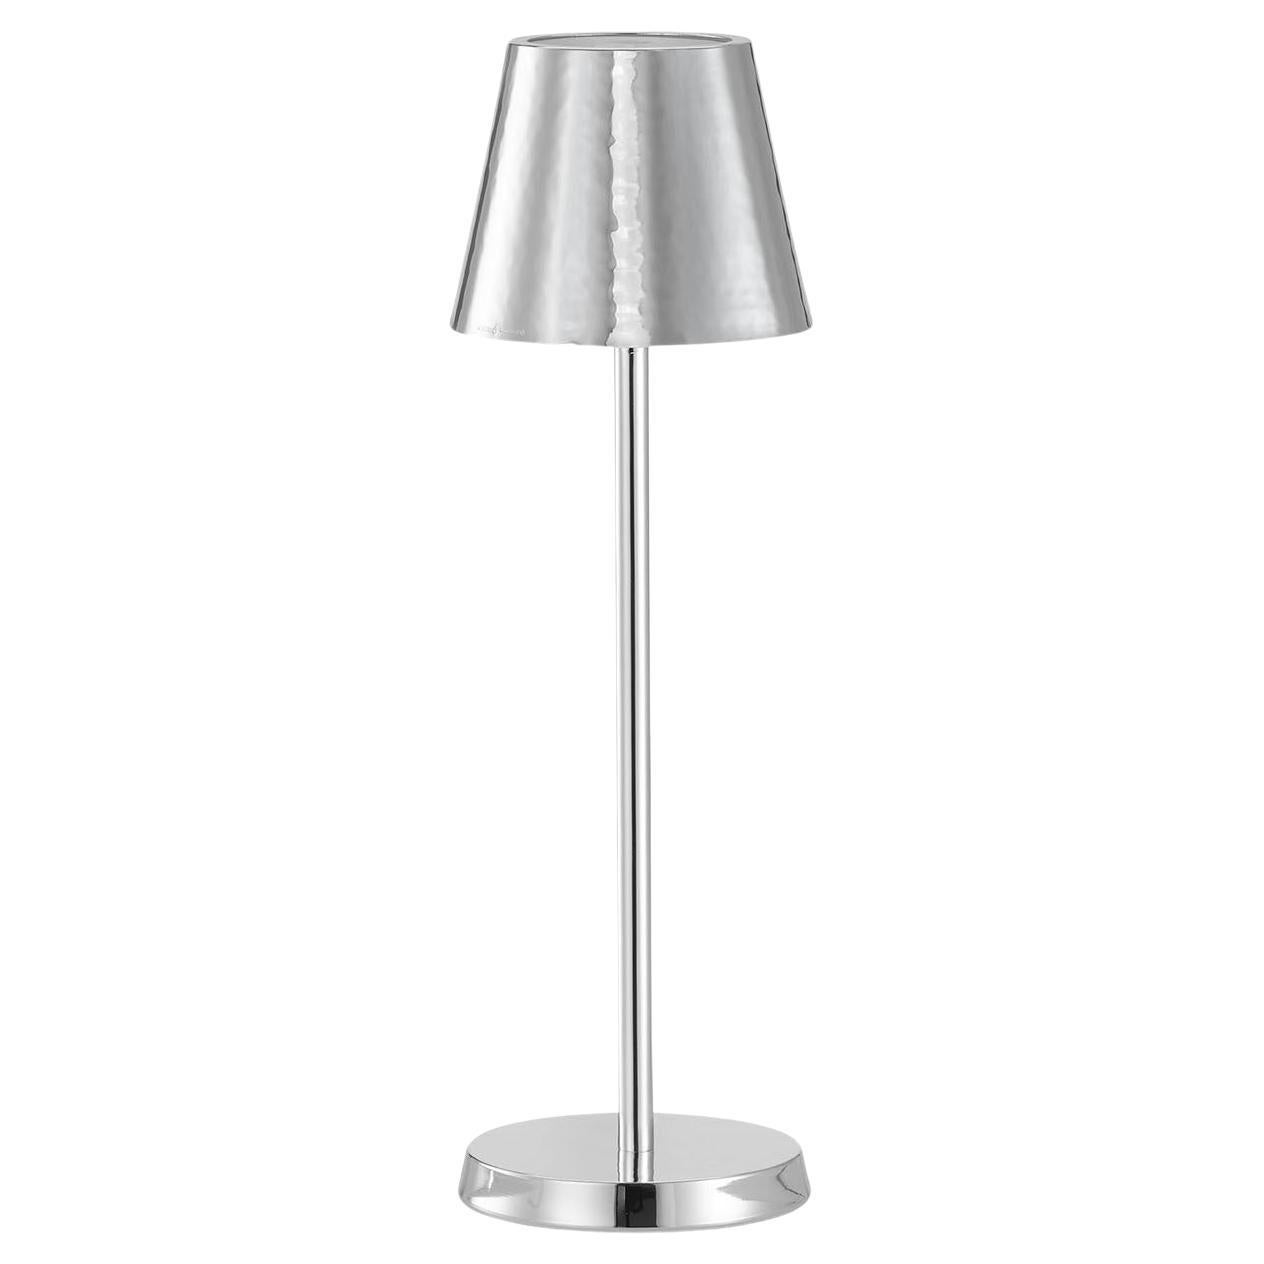 Silver Lamp #1 by Itamar Harari